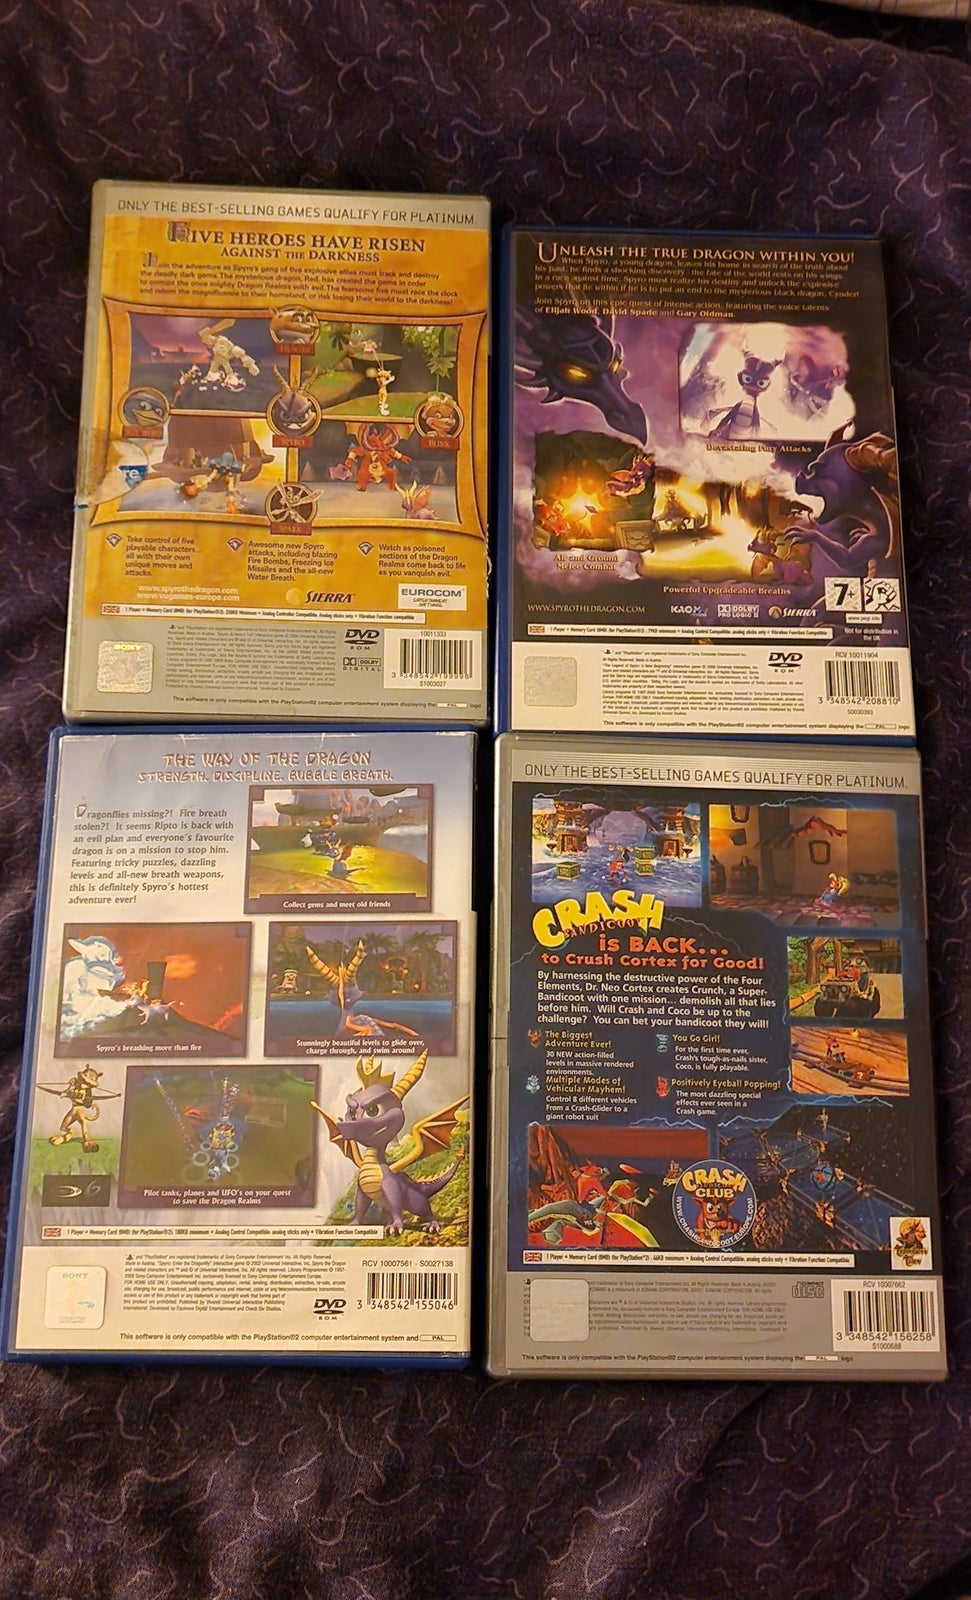 Ps2 Spyro og Crash bandicoot spil sælges Billigt, PS2